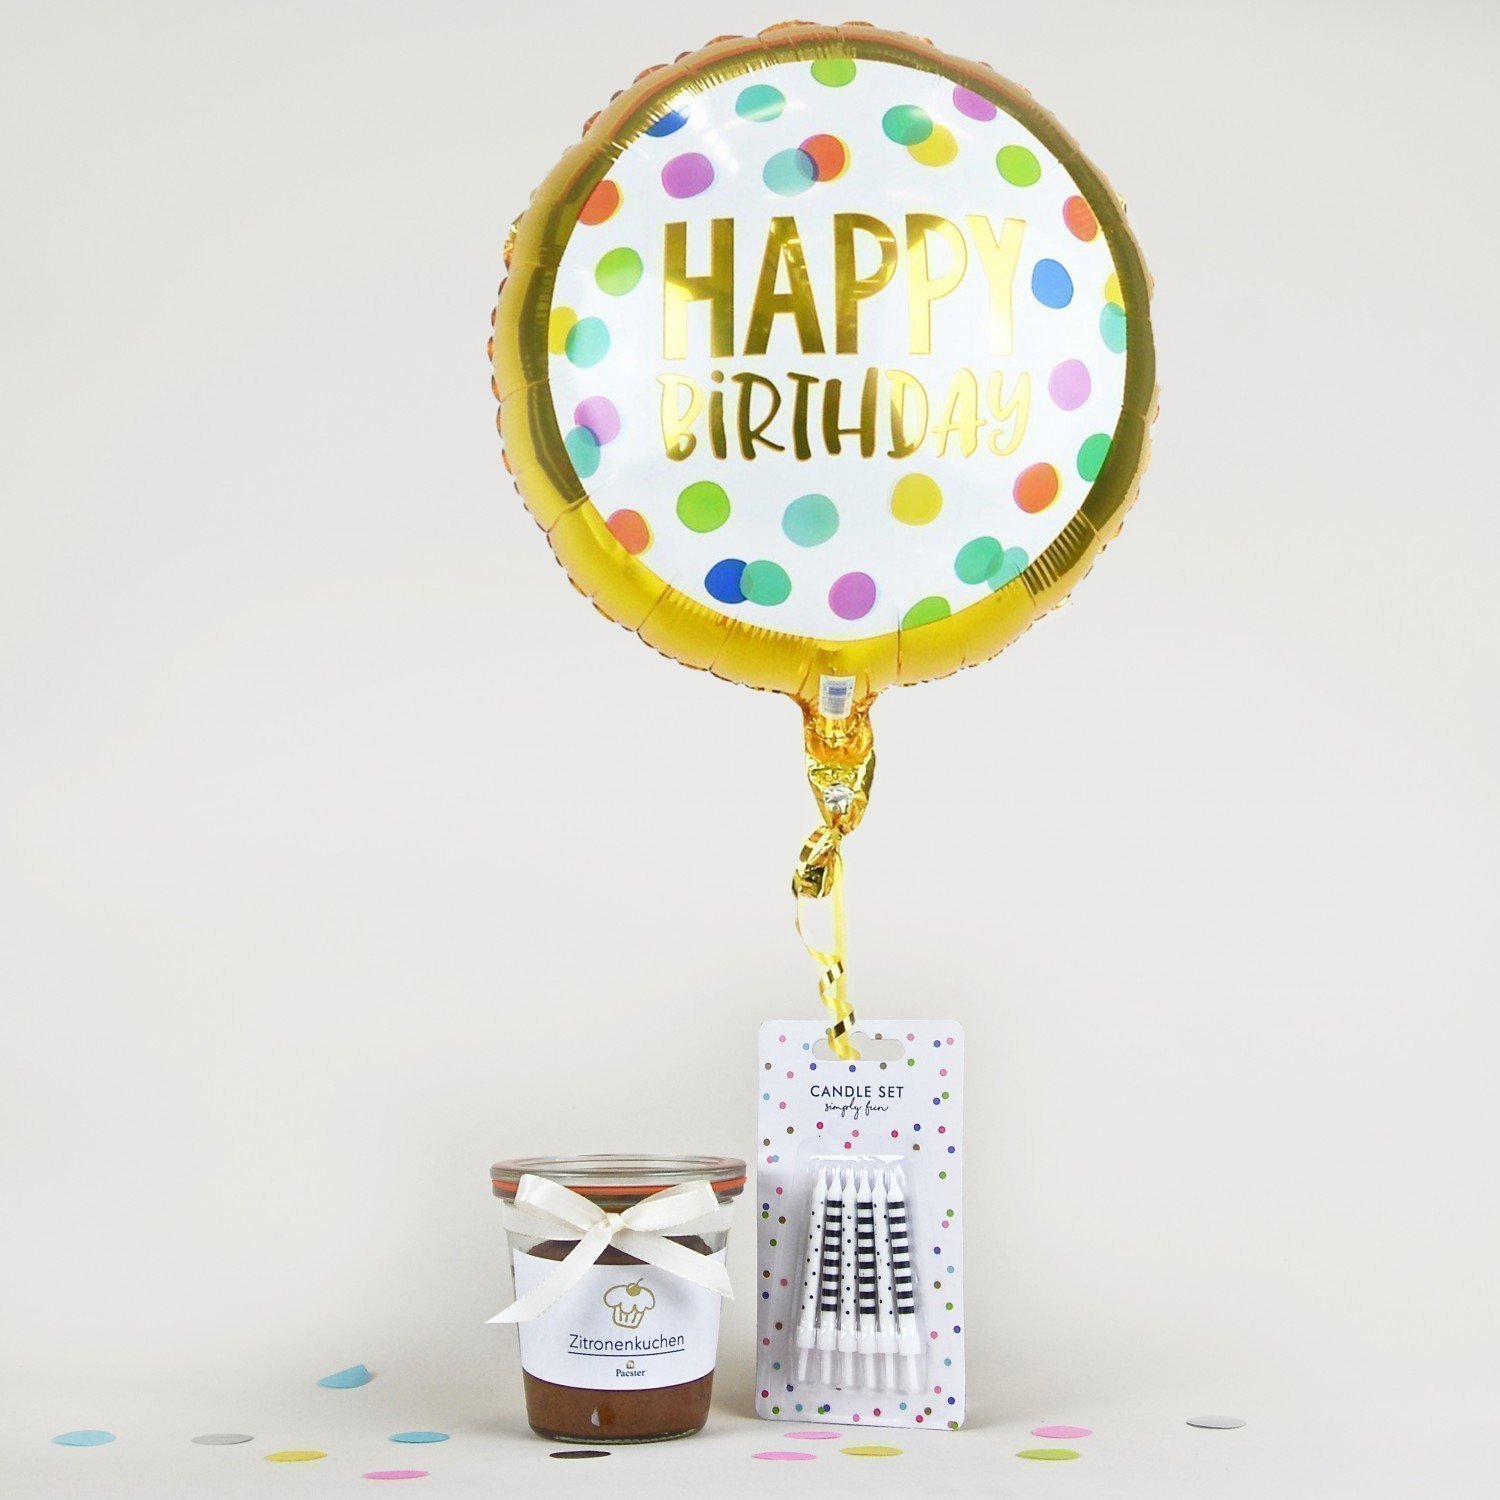 Cutie Pie Birthday - Balloon